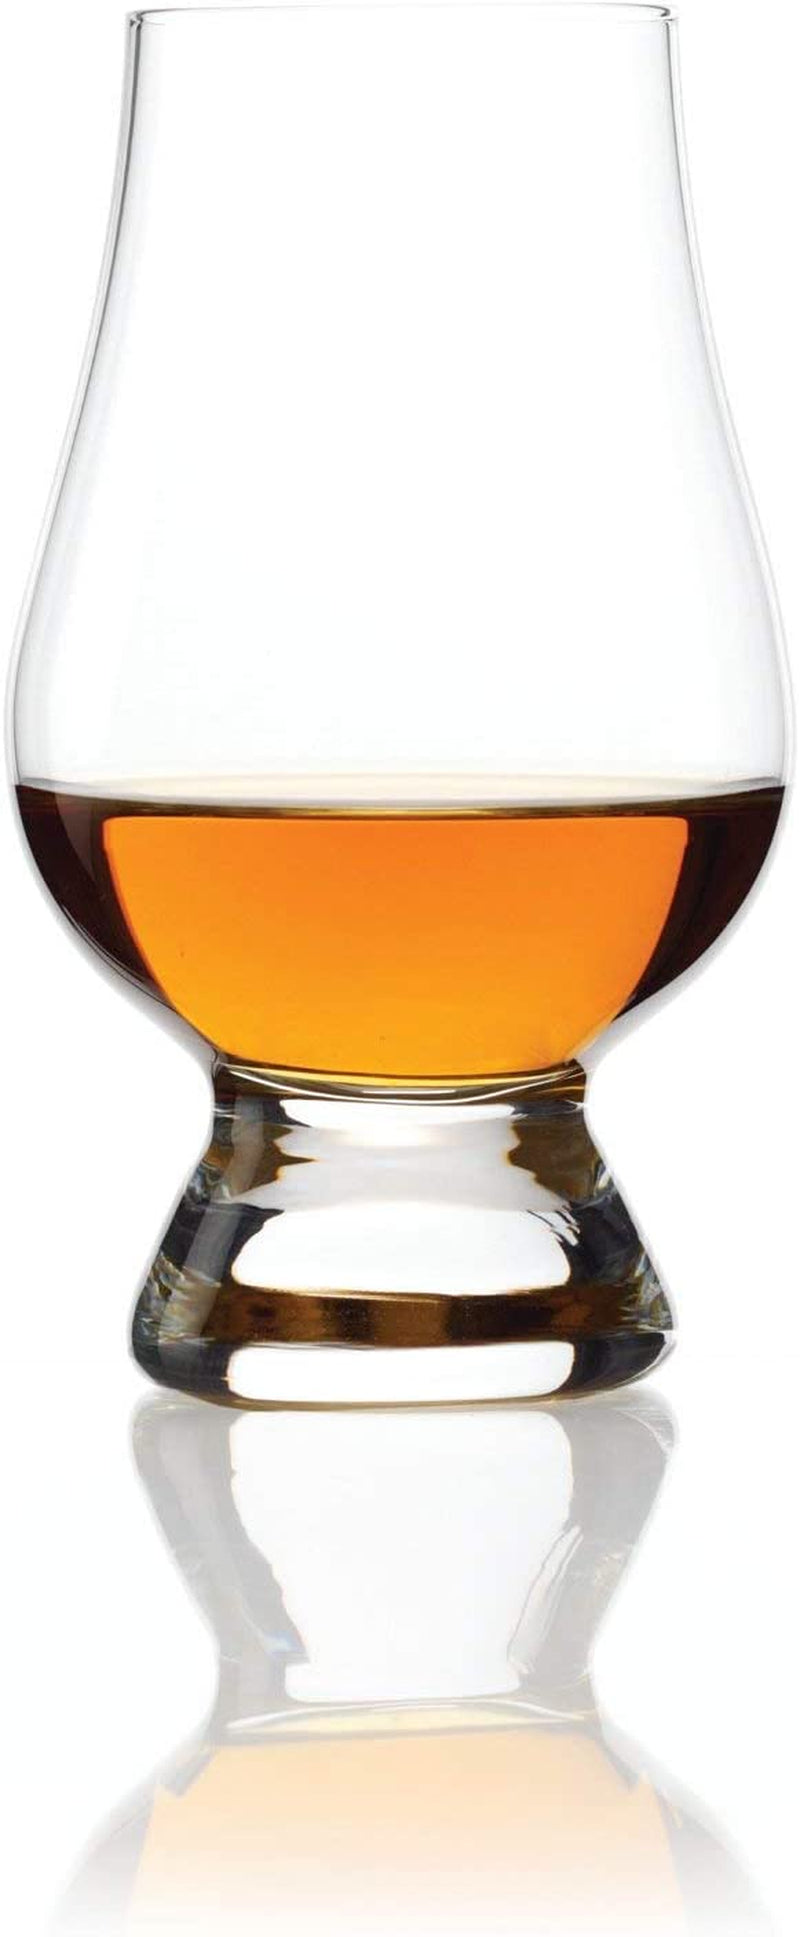 Glencairn Whisky Glass, Set of 6 in Trade Pack